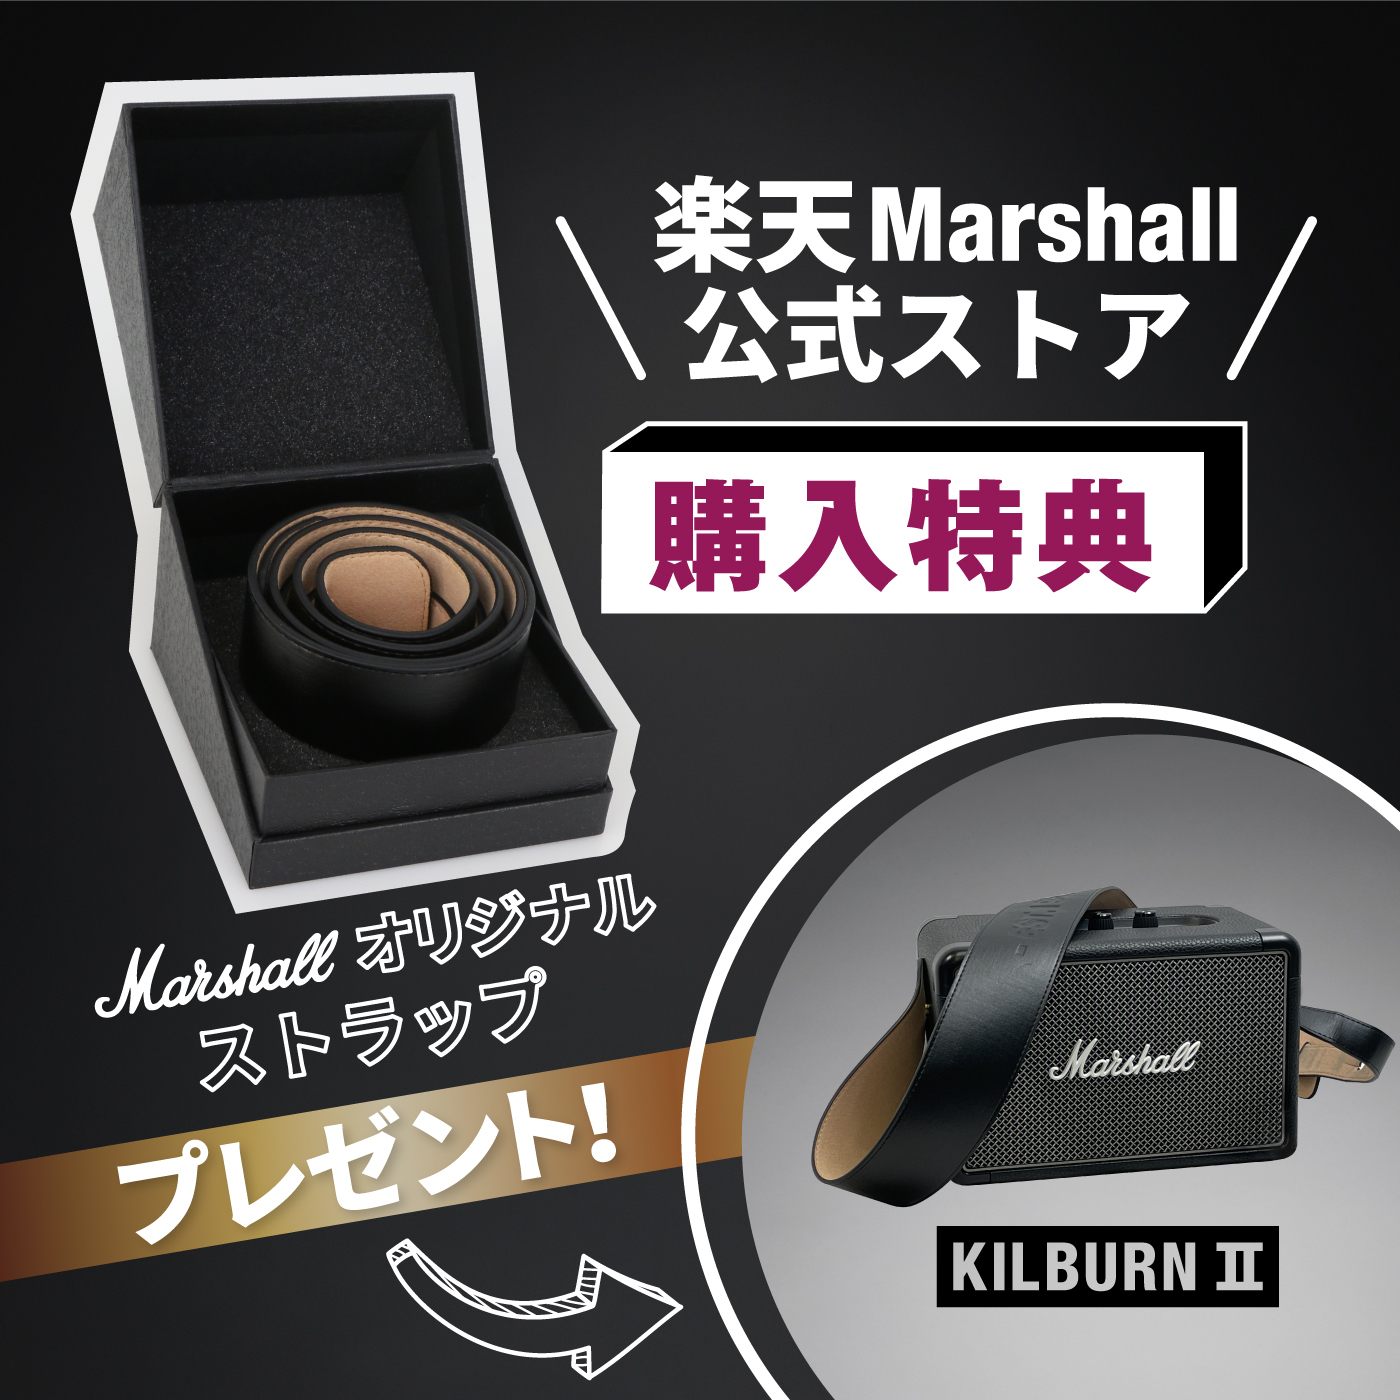 Marshall 公式ストア KILBURN 2 Bluetooth スピーカー マーシャル キルバーン 国内正規品 aux aptX IPX  バッテリー 低音 大型 インテリア高音質 おしゃれ ステレオ レトロ 持ち運び | Marshall公式ストア